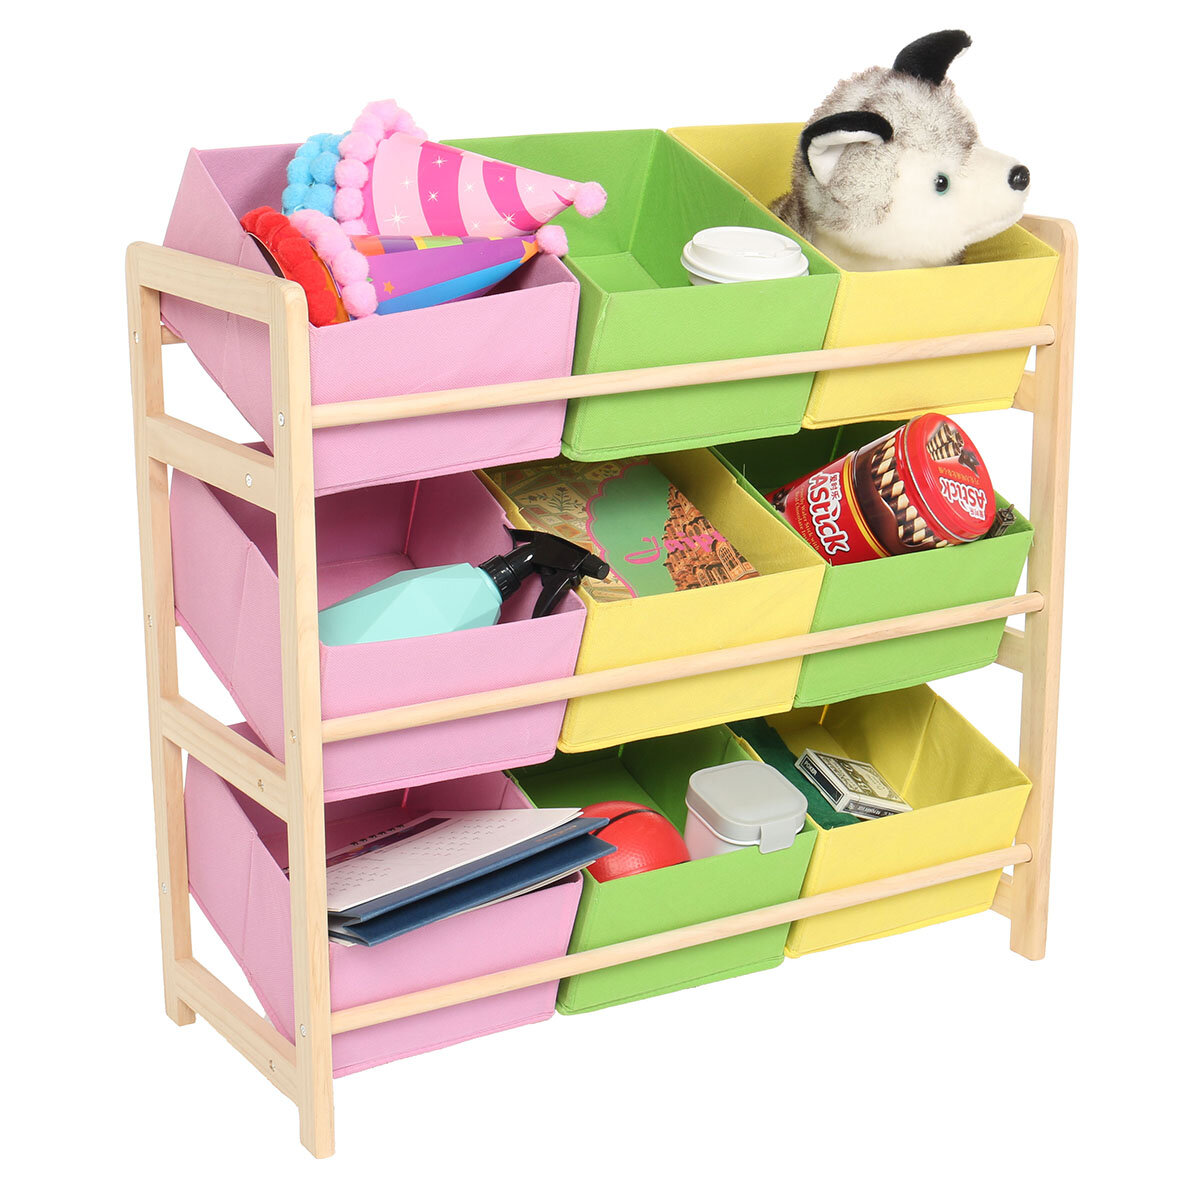 66 * 30 * 9 CM Geel Roze Groen Massief Houten Speelgoedrek voor kinderen Opbergrek Speelgoedrek